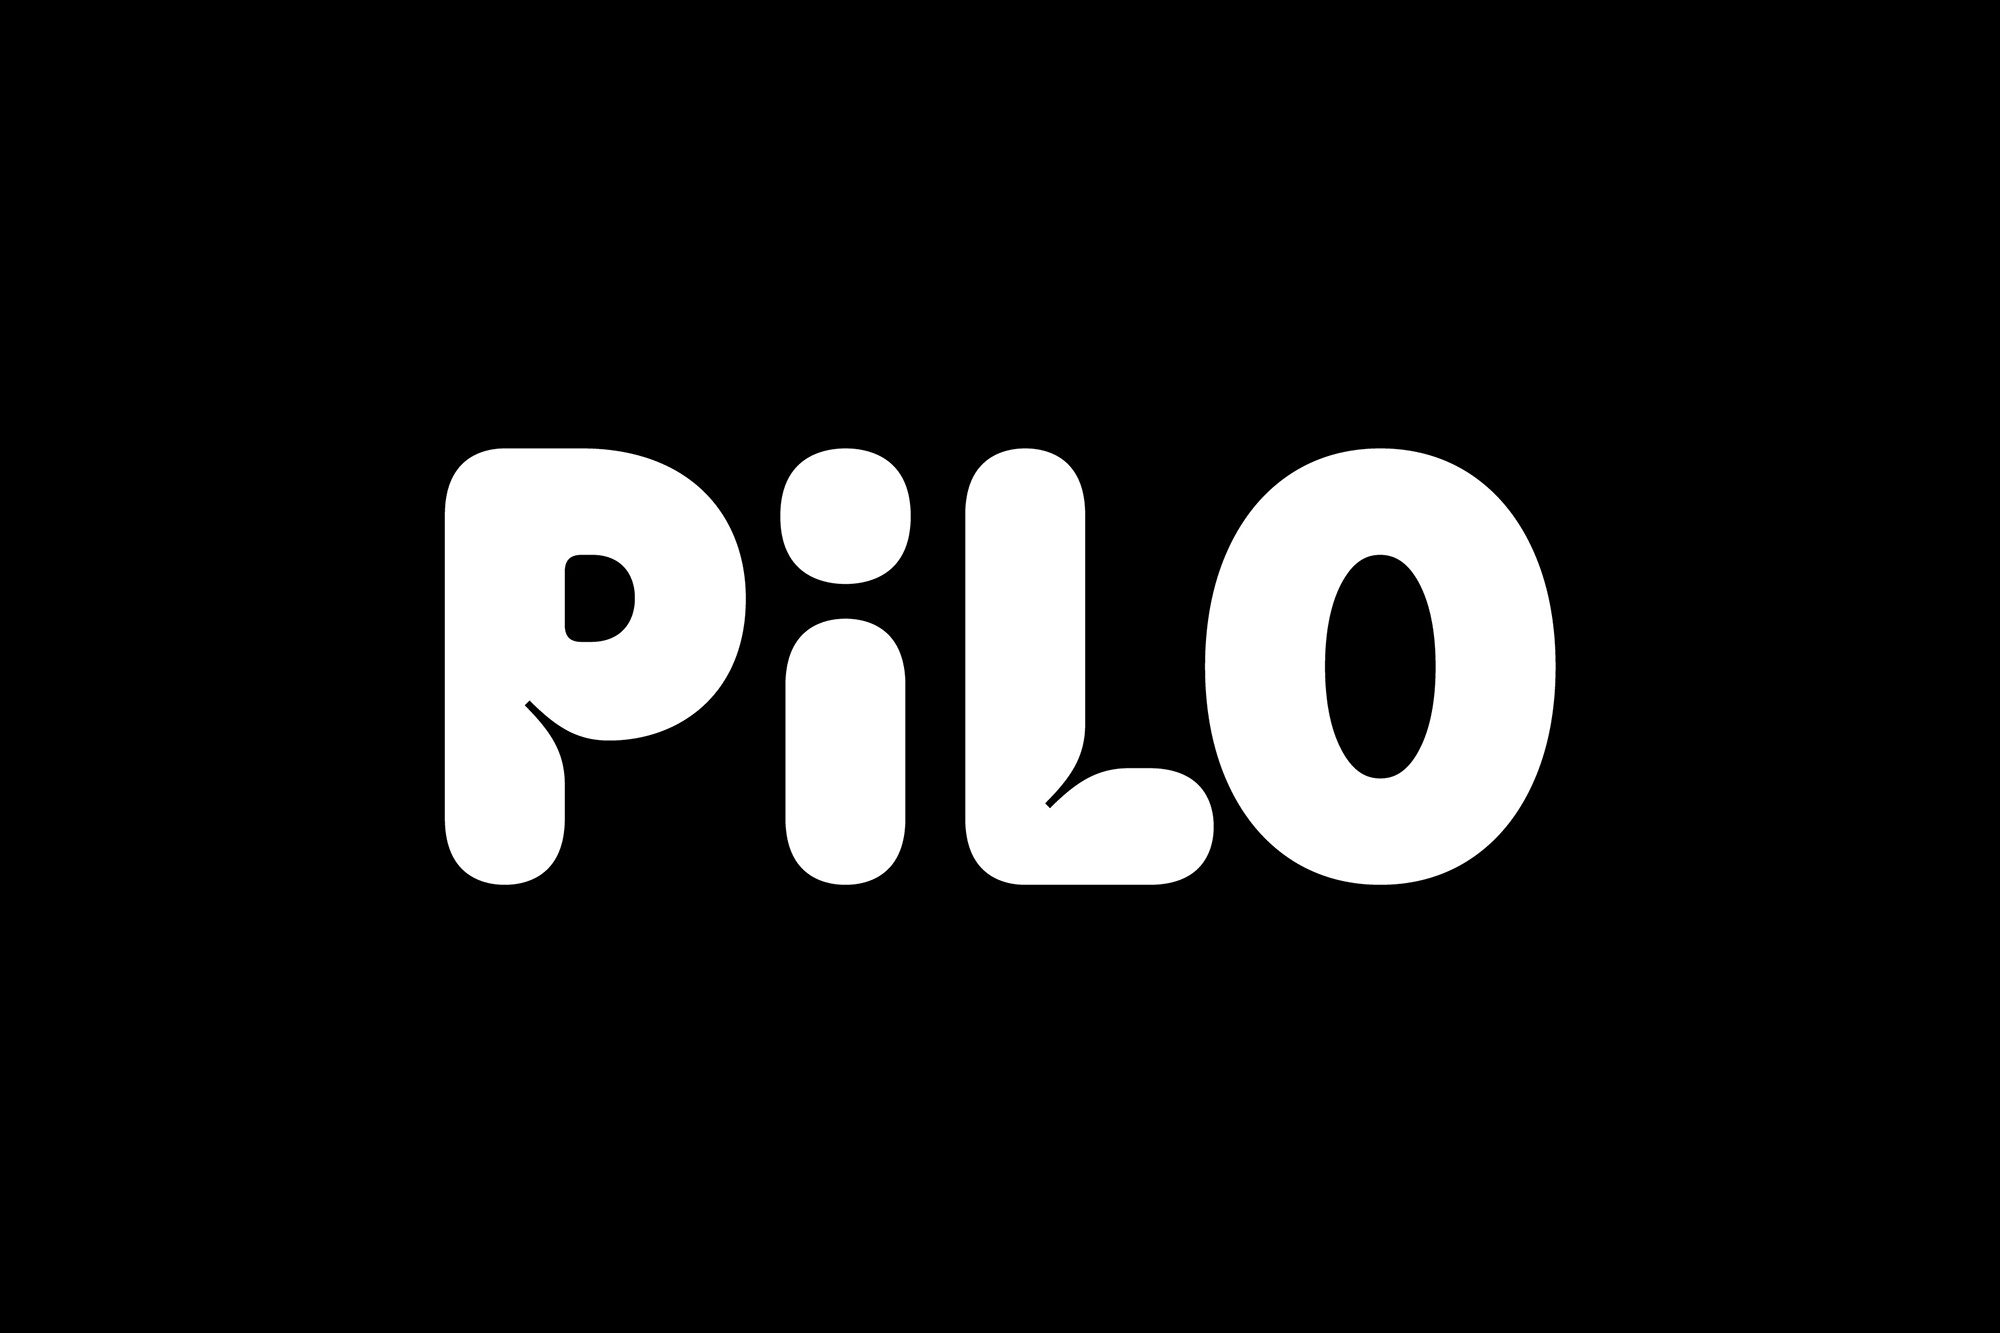 Pilo青年旅社品牌视觉设计